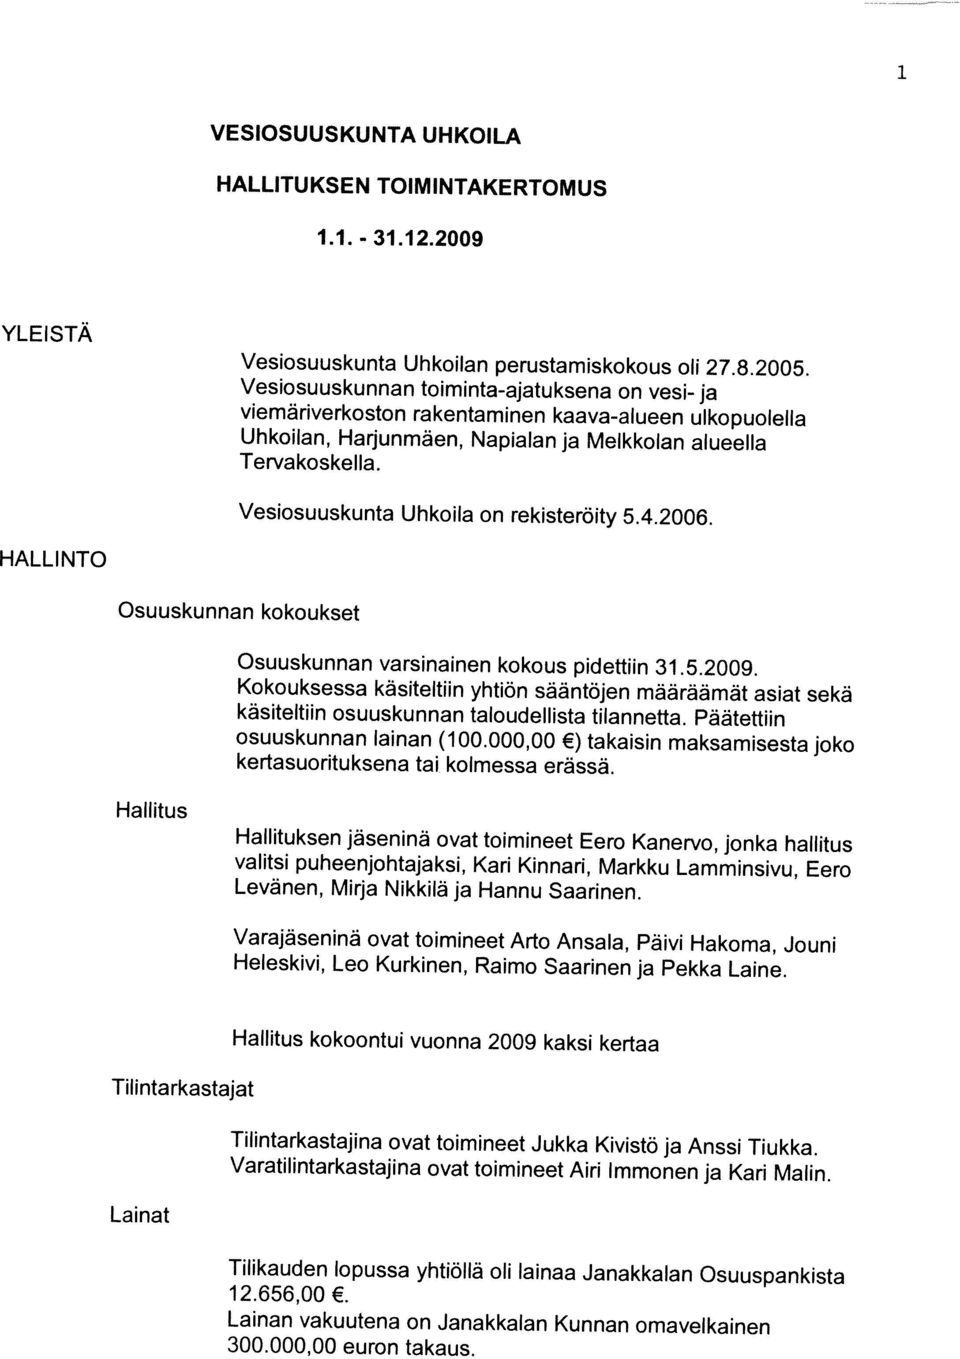 Tilintarkastajina ovat toimineet Jukka Kivistö ja Anssi Tiukka. Tilintarkastajat Hallitus kokoontui vuonna 2009 kaksi kertaa Heleskivi, Leo Kurkinen, Raimo Saarinen ja Pekka Laine.